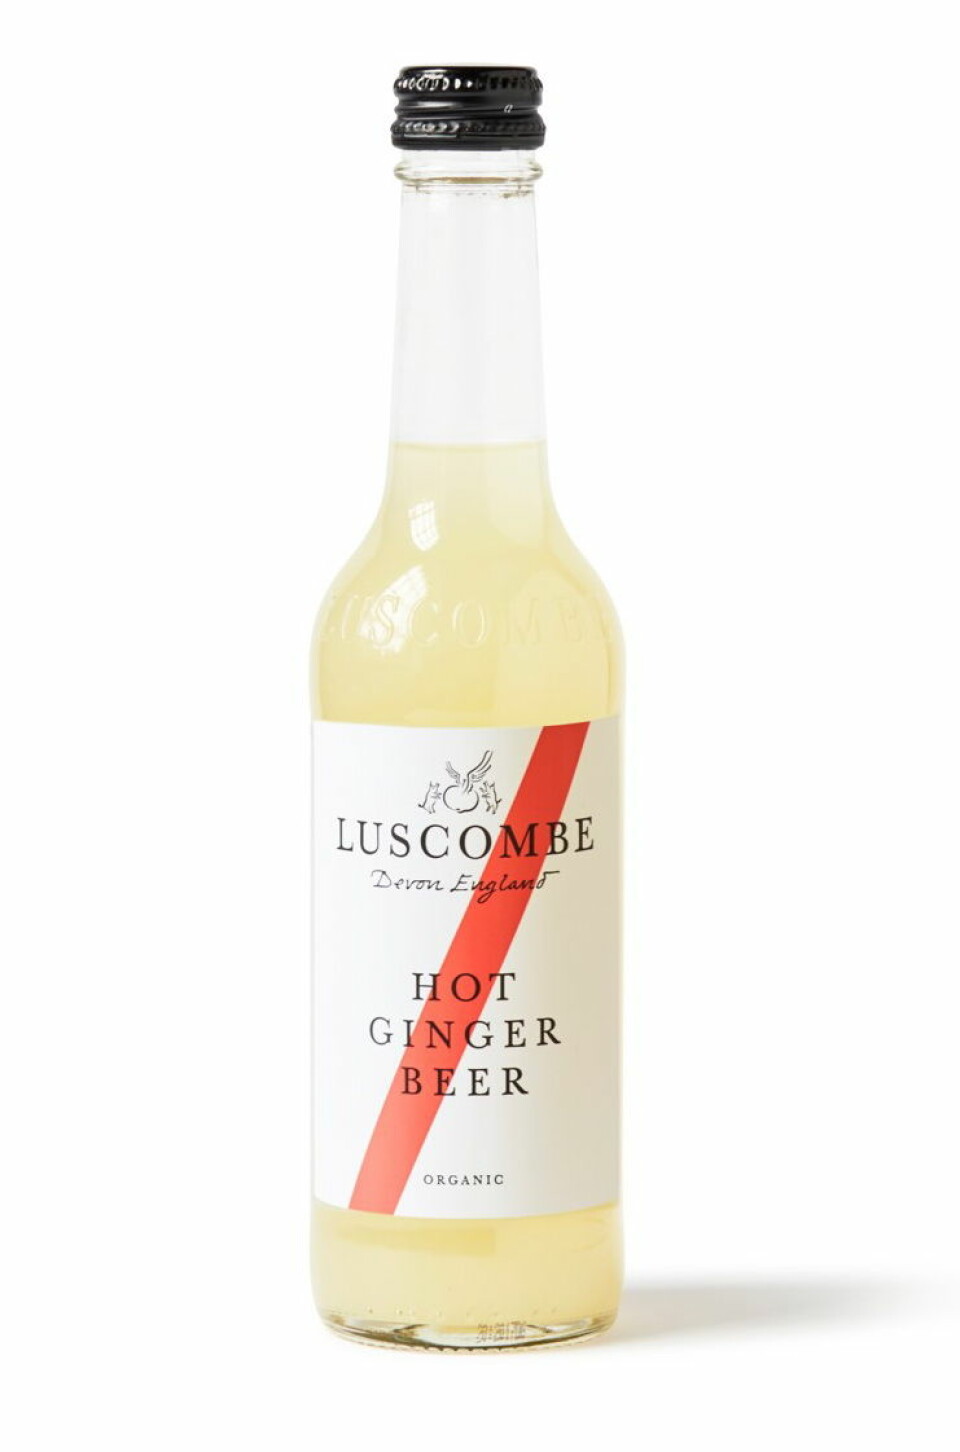 Luscombe Hot Ginger Beer. (Foto: Leske.no)